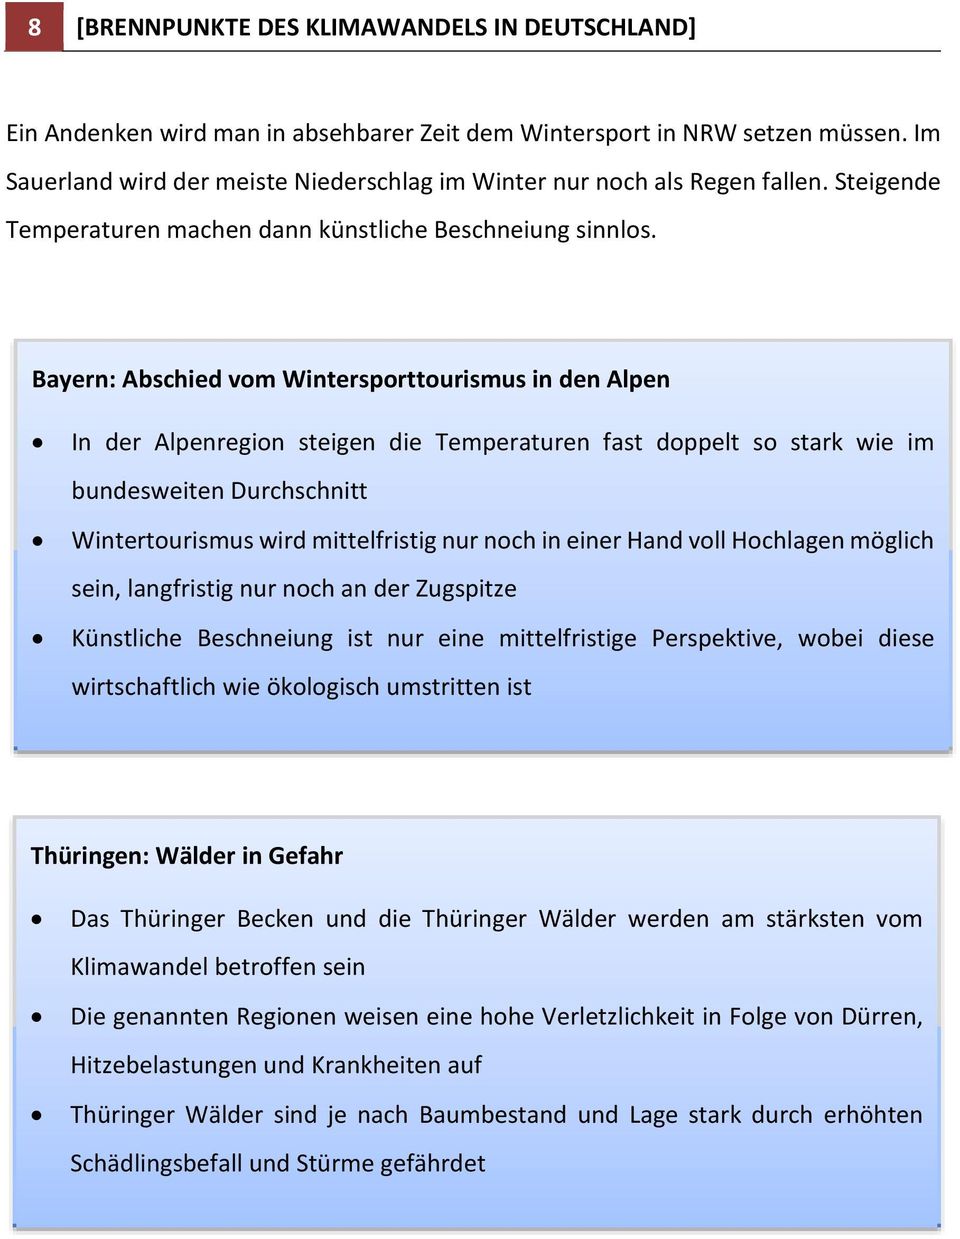 Bayern: Abschied vom Wintersporttourismus in den Alpen In der Alpenregion steigen die Temperaturen fast doppelt so stark wie im bundesweiten Durchschnitt Wintertourismus wird mittelfristig nur noch